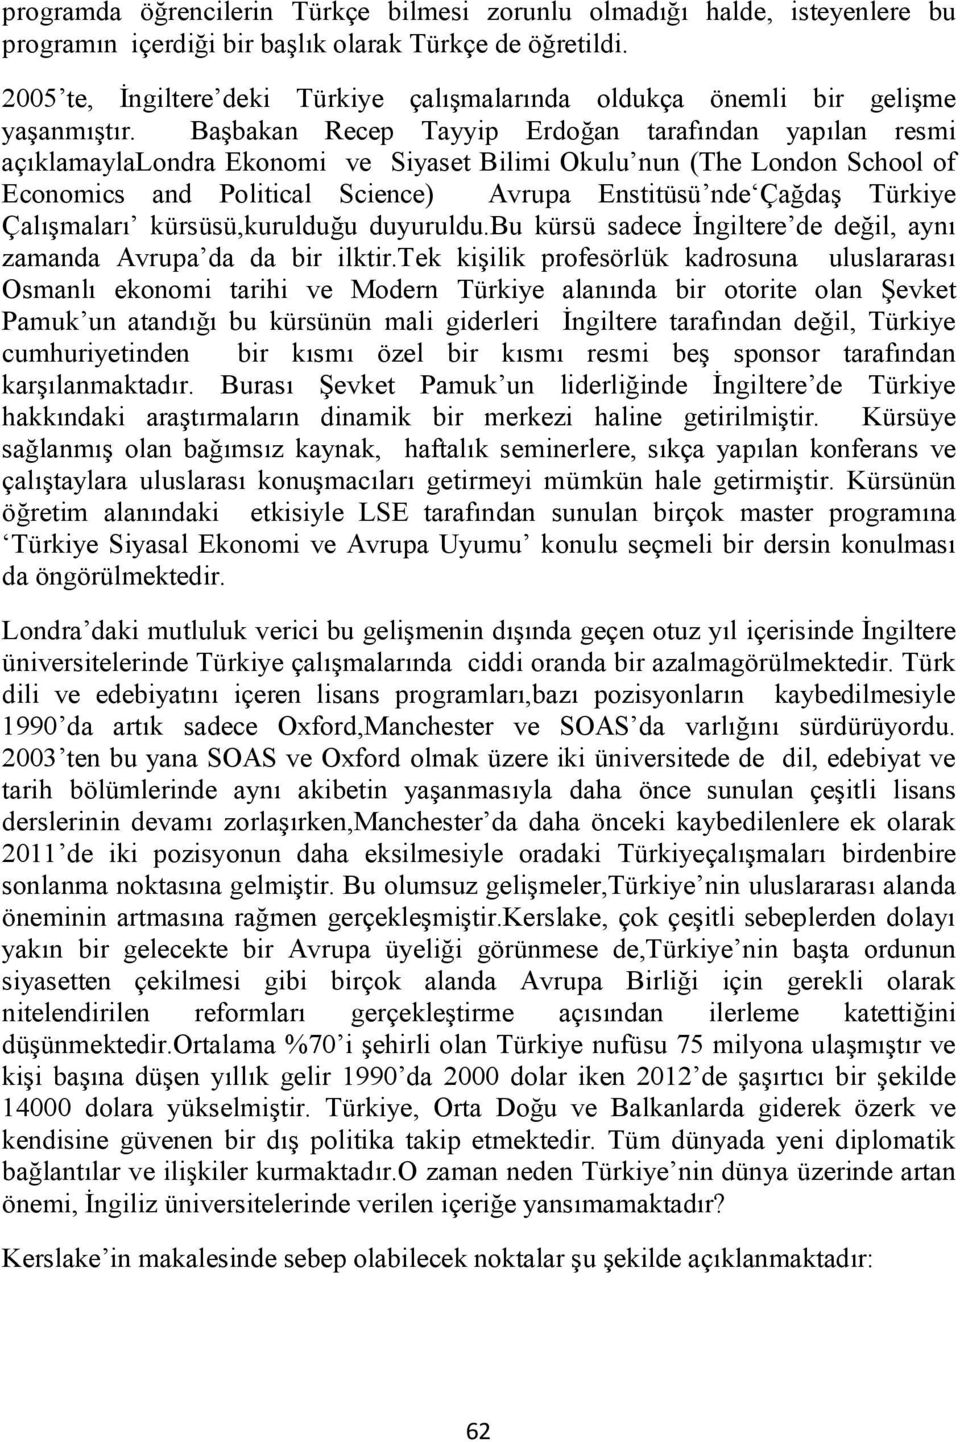 Başbakan Recep Tayyip Erdoğan tarafından yapılan resmi açıklamaylalondra Ekonomi ve Siyaset Bilimi Okulu nun (The London School of Economics and Political Science) Avrupa Enstitüsü nde Çağdaş Türkiye